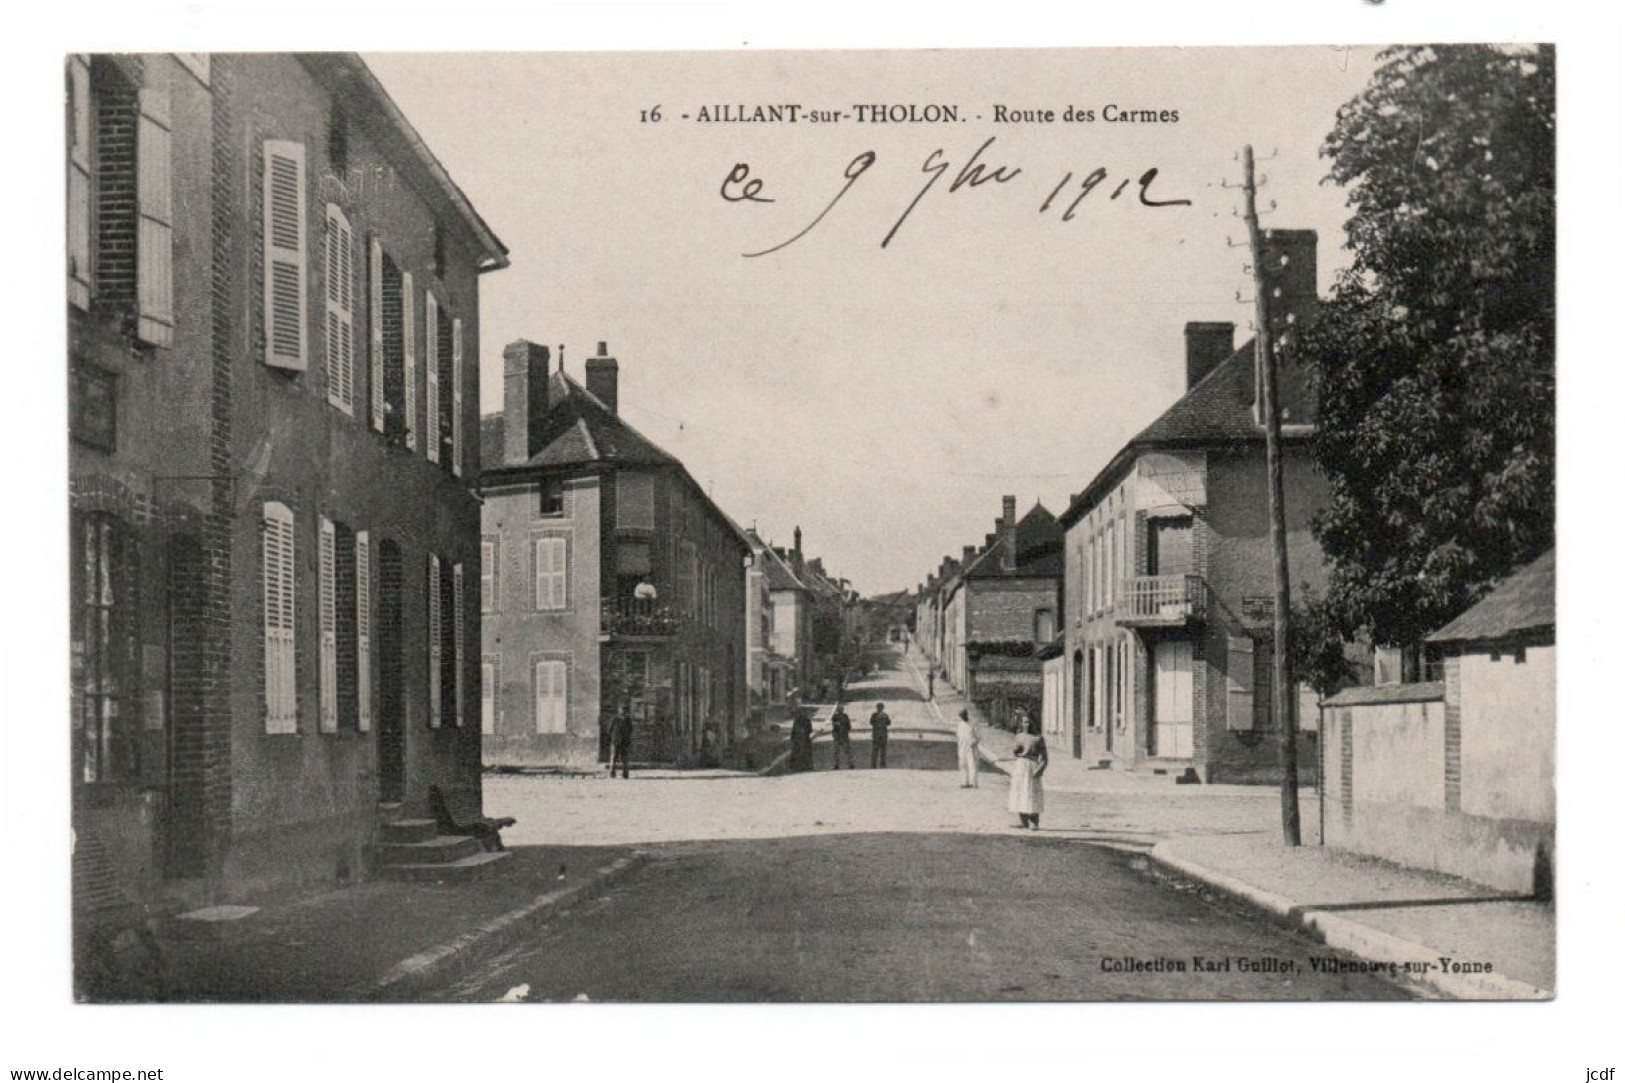 89 AILLANT SUR THOLON - Route Des Carmes N° 16 - Edit Karl Guillot 1912 - Animée - Aillant Sur Tholon